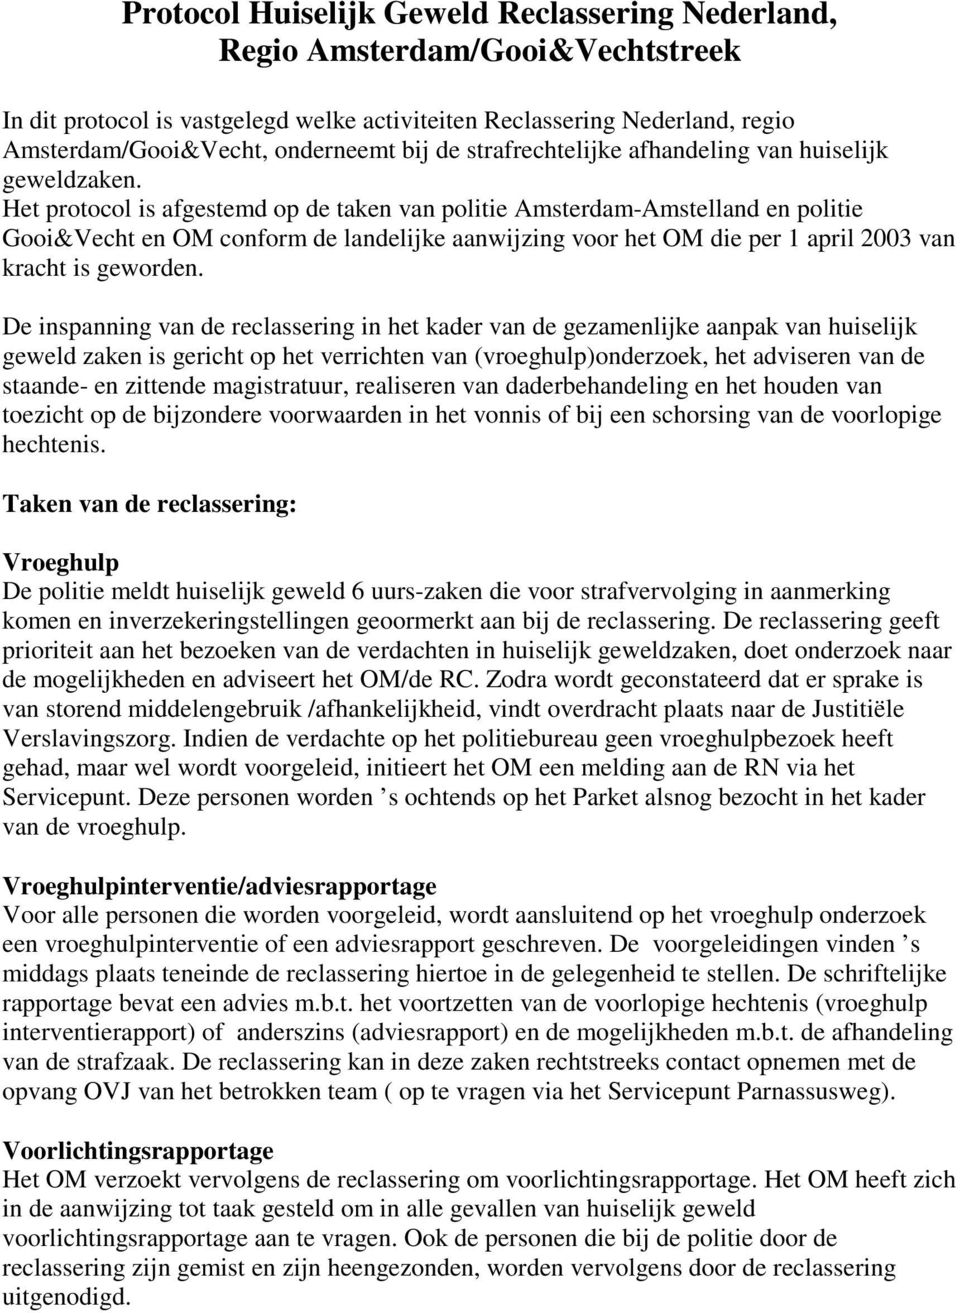 Het protocol is afgestemd op de taken van politie Amsterdam-Amstelland en politie Gooi&Vecht en OM conform de landelijke aanwijzing voor het OM die per 1 april 2003 van kracht is geworden.